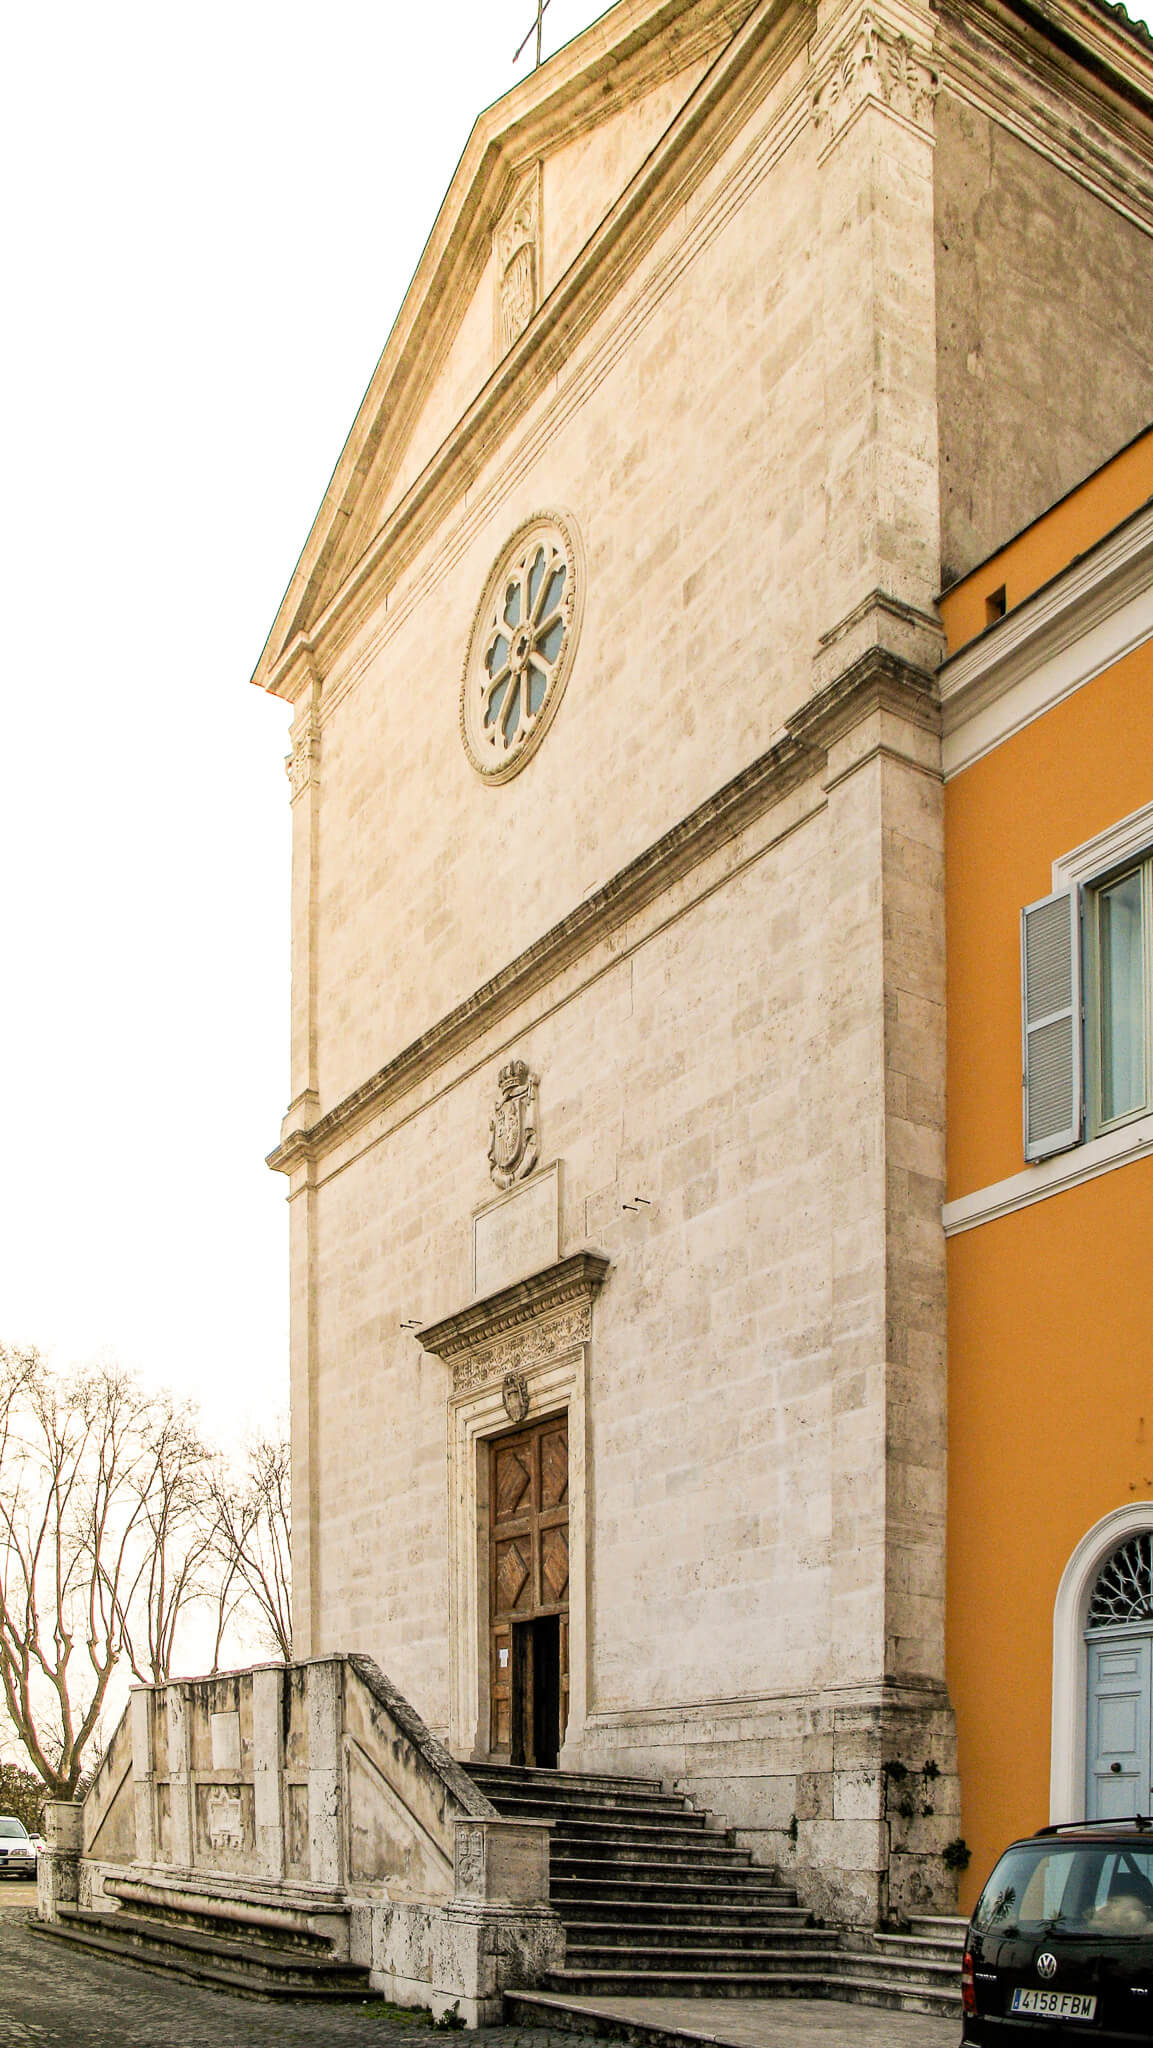 Front facade of San Pietro in Montorio in Rome